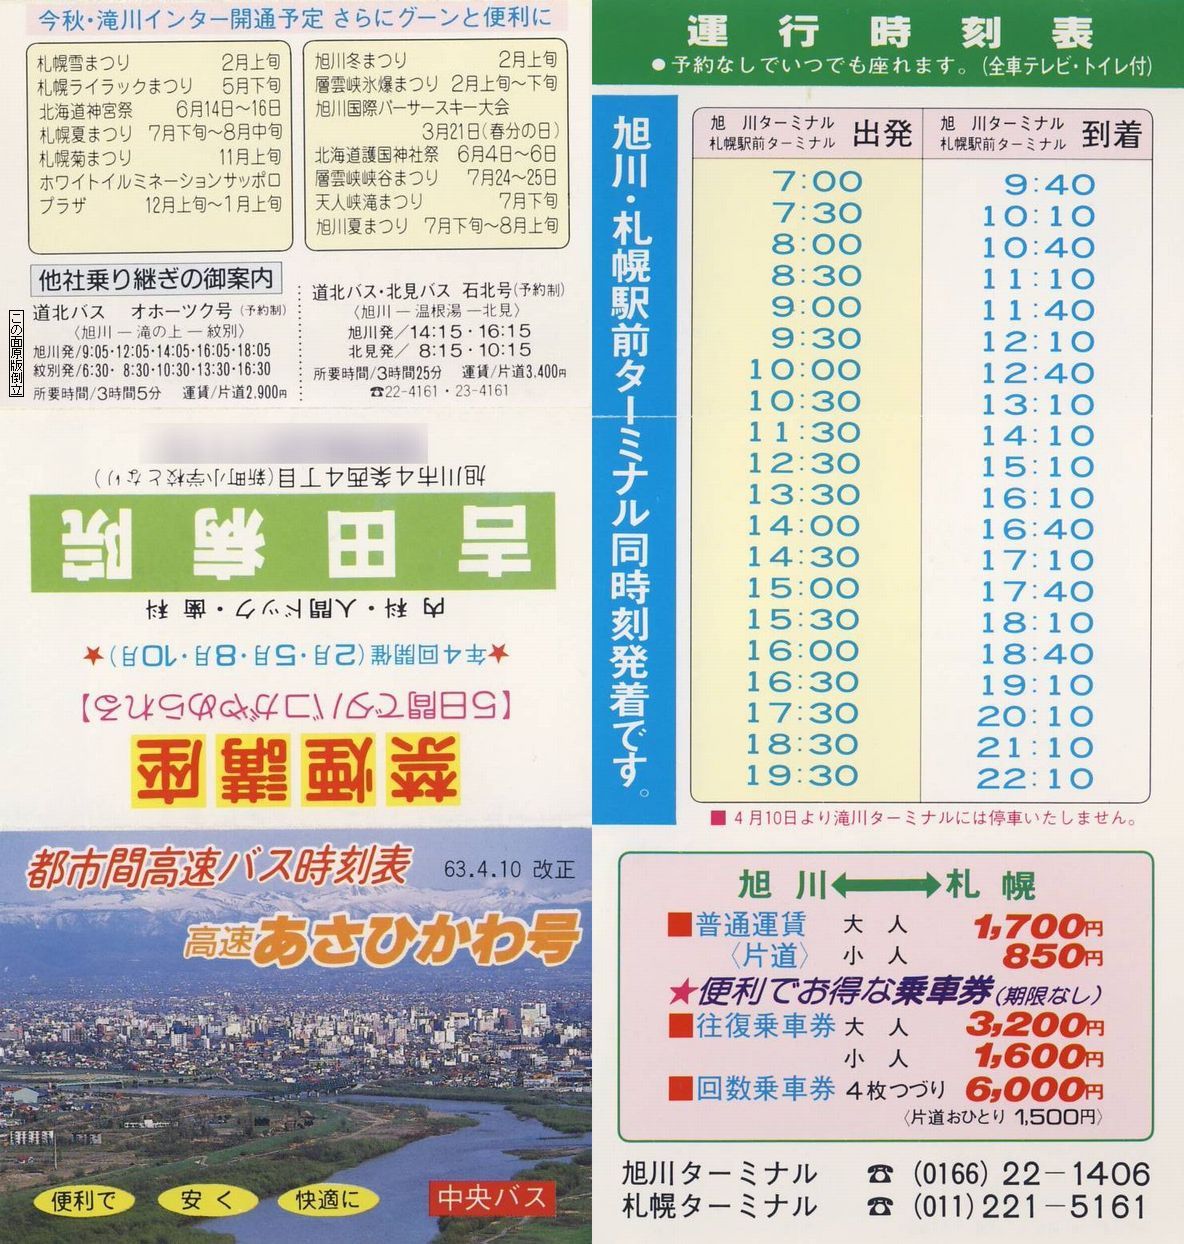 1988-04-10改正_北海道中央バス_高速あさひかわ号時刻表